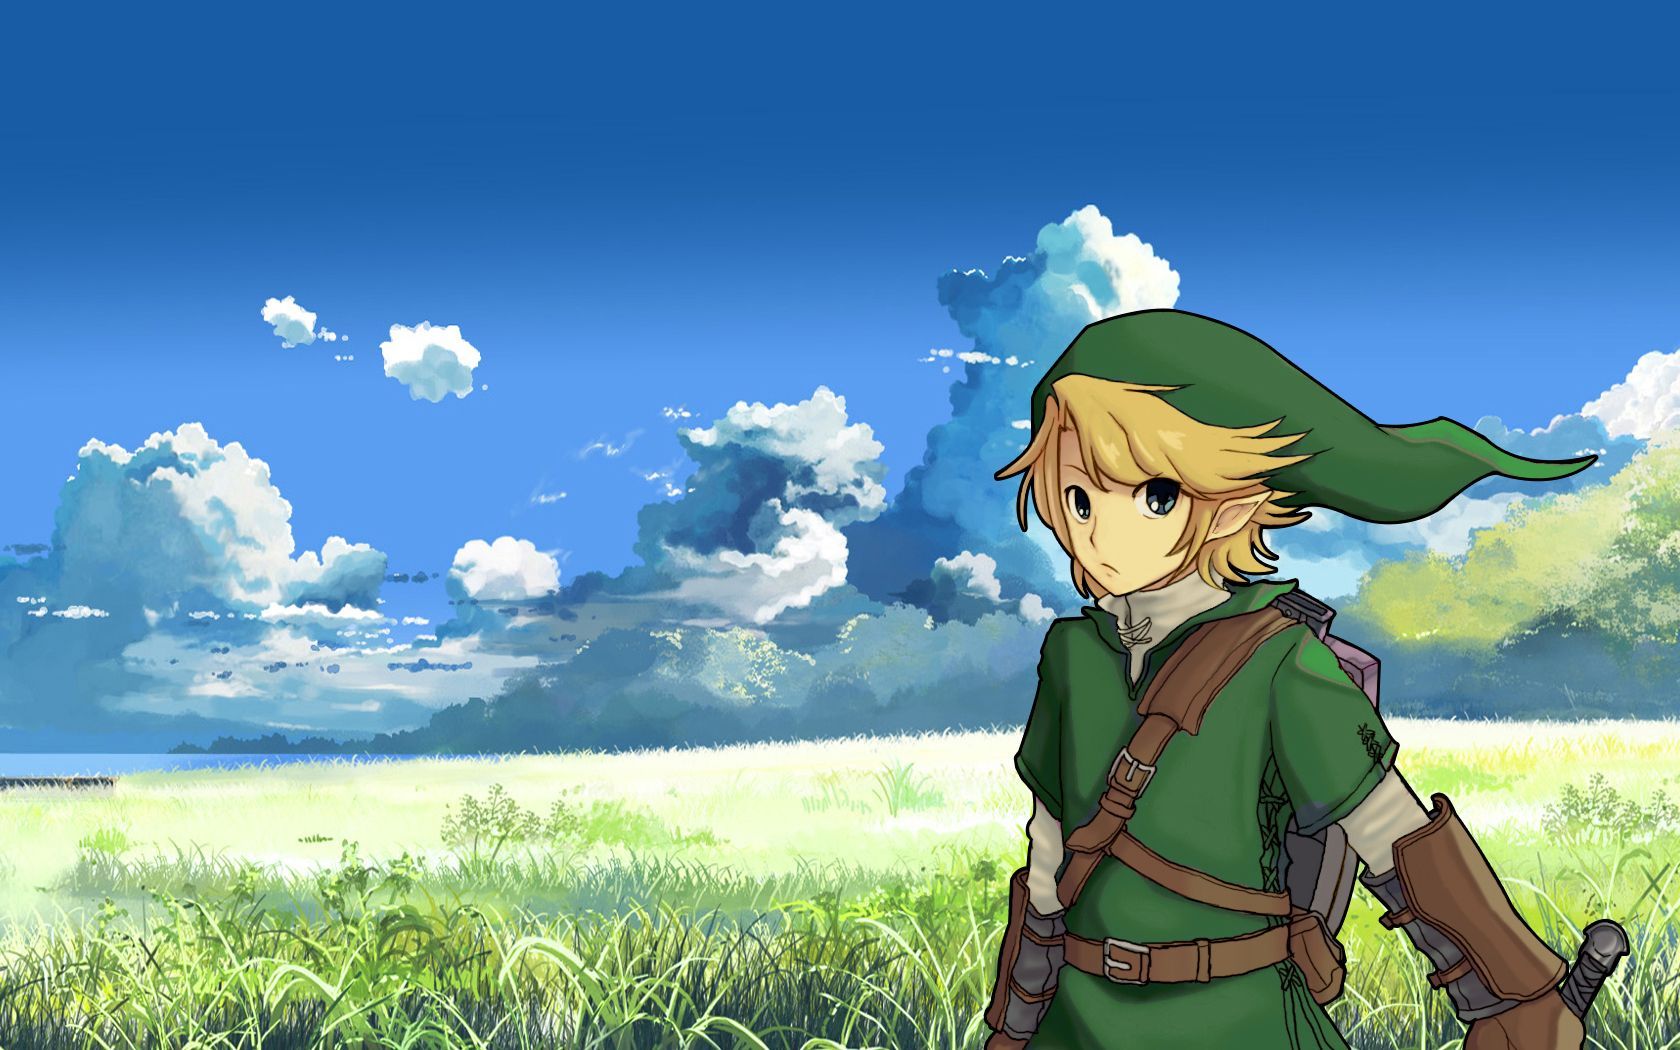 Legend of Zelda Background Desktop | Wallpapers, Backgrounds ...